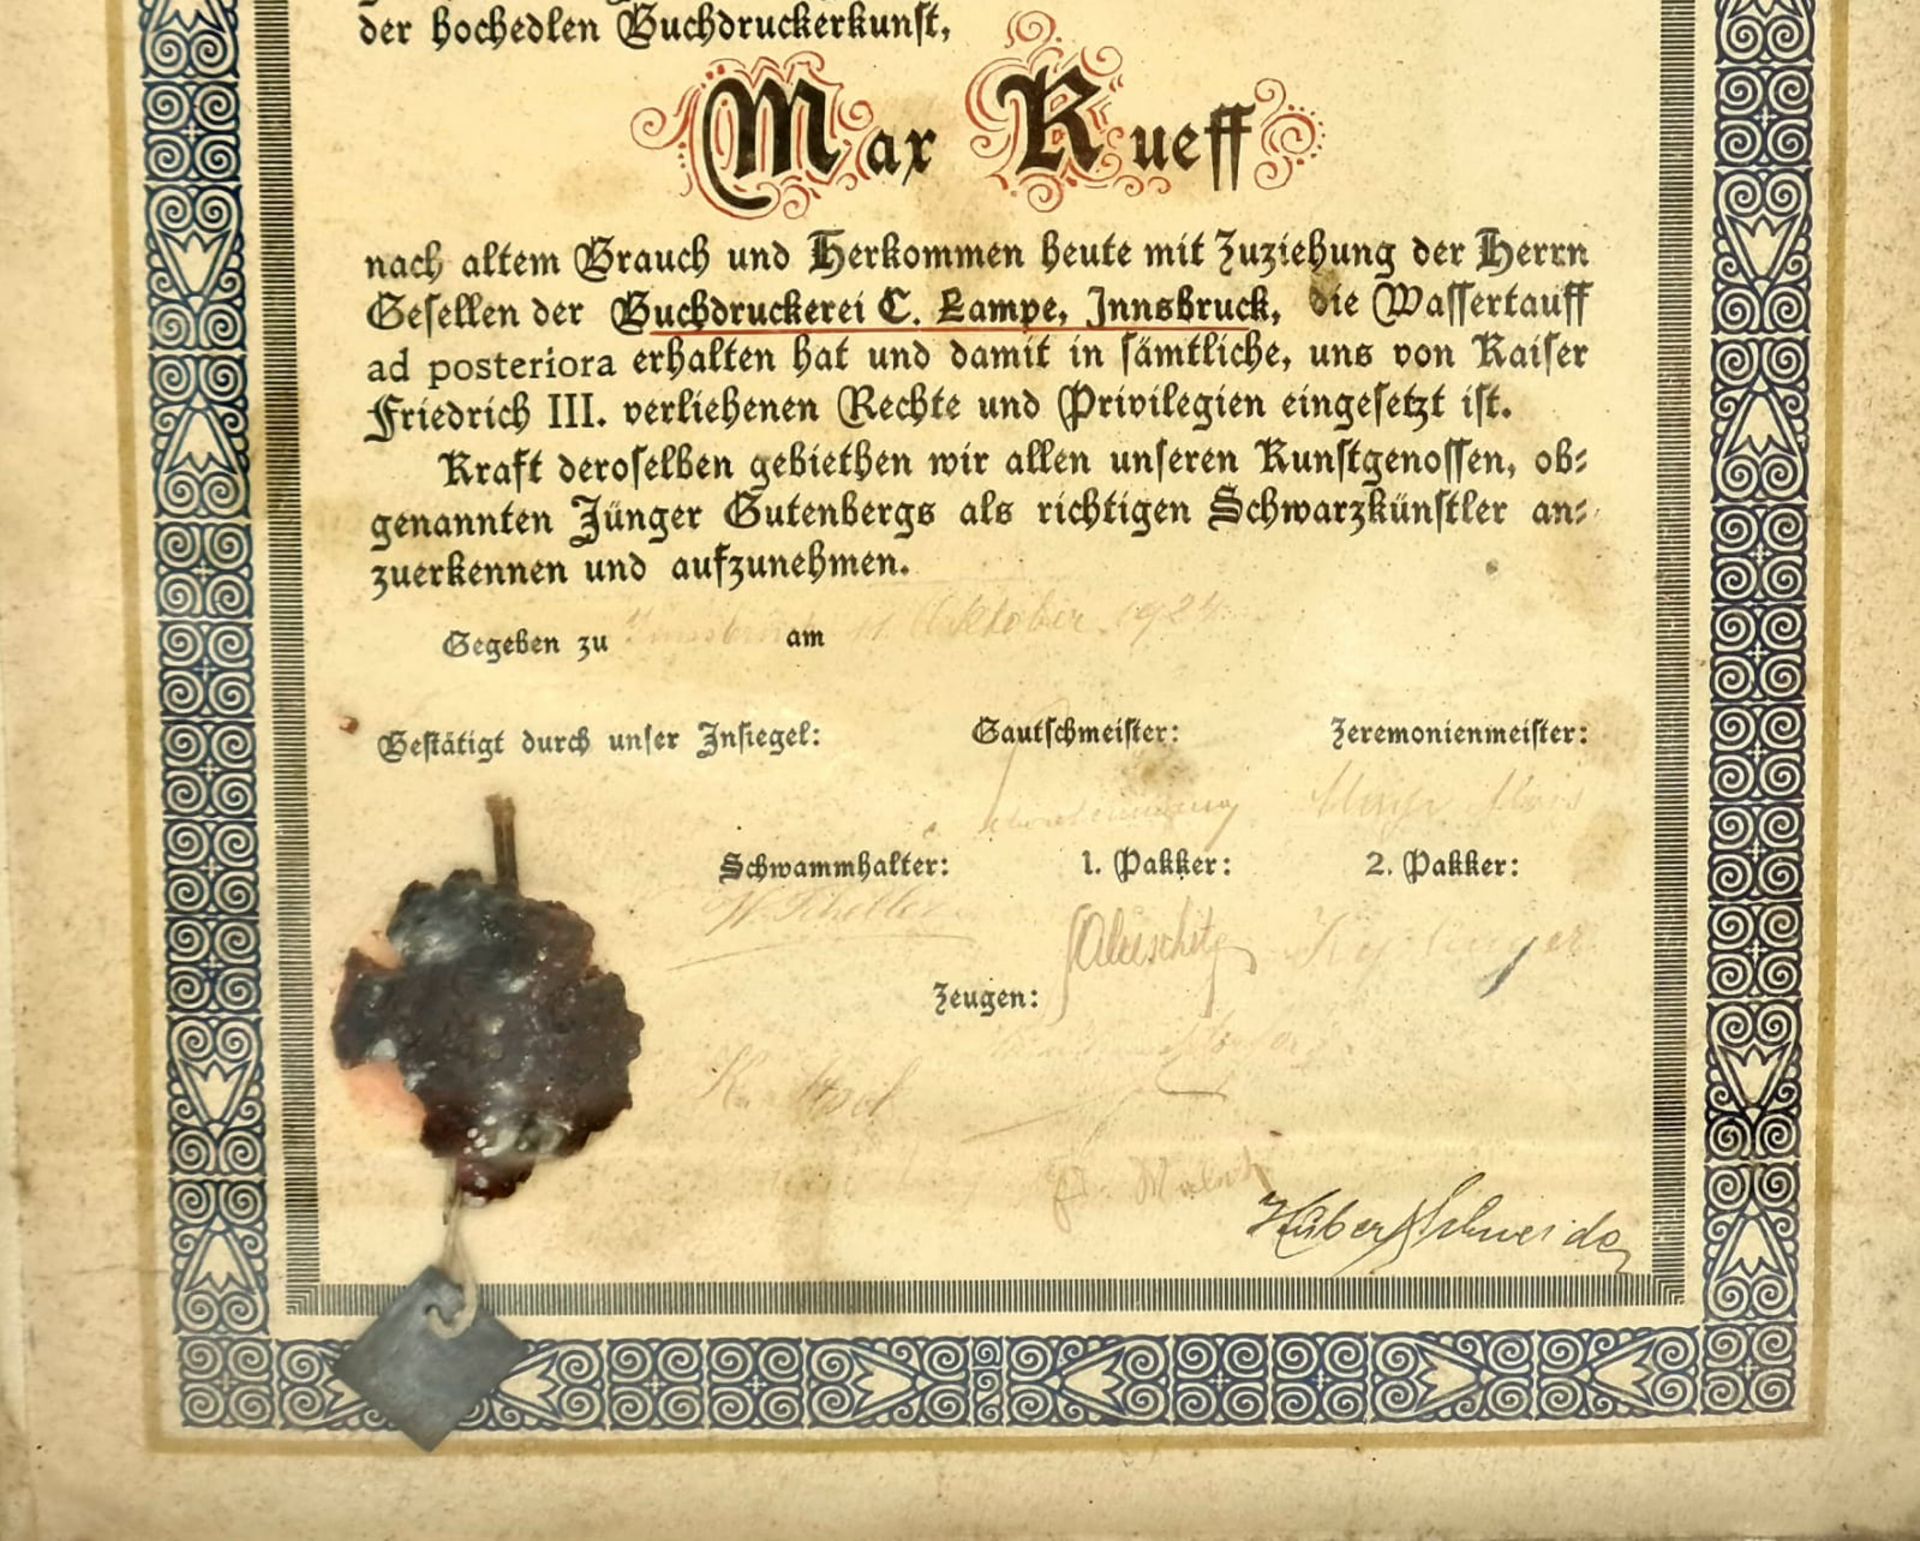 Gautsch Brief, von gottes Gnaden , Wir jünger Gutenbergs des heiligen römischen Reiches, Innsbruck - Image 3 of 3